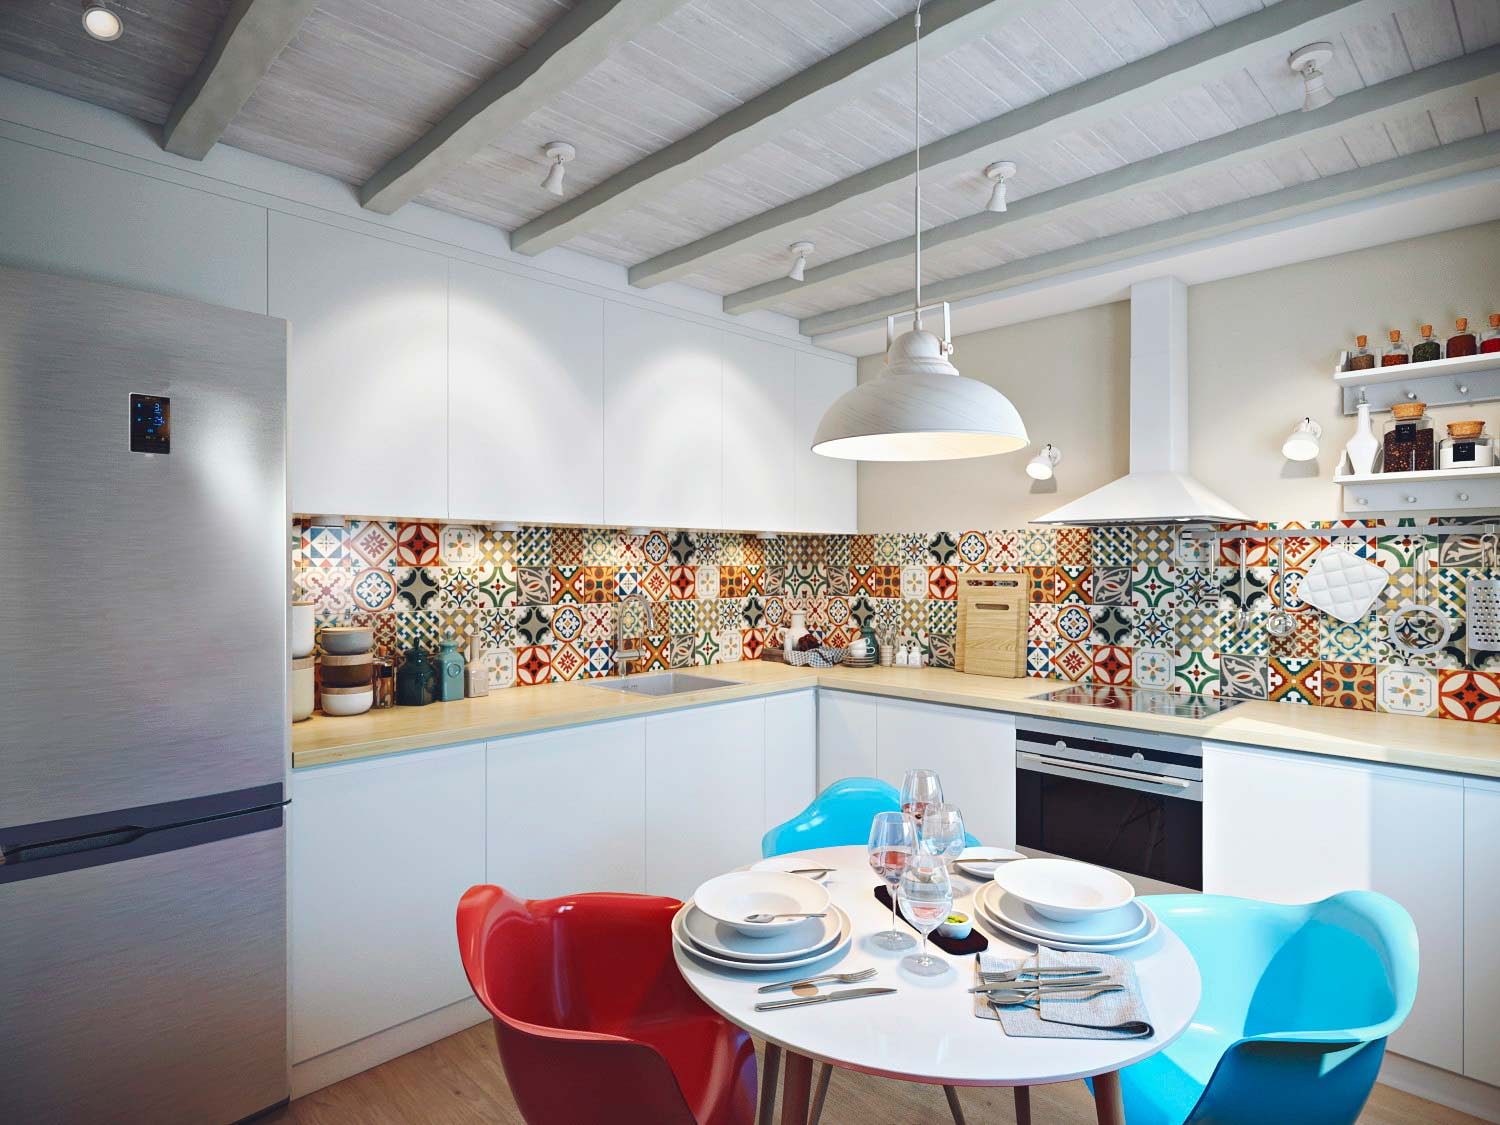 Дизайн кухни 10 кв. метров — 100 реальных фото